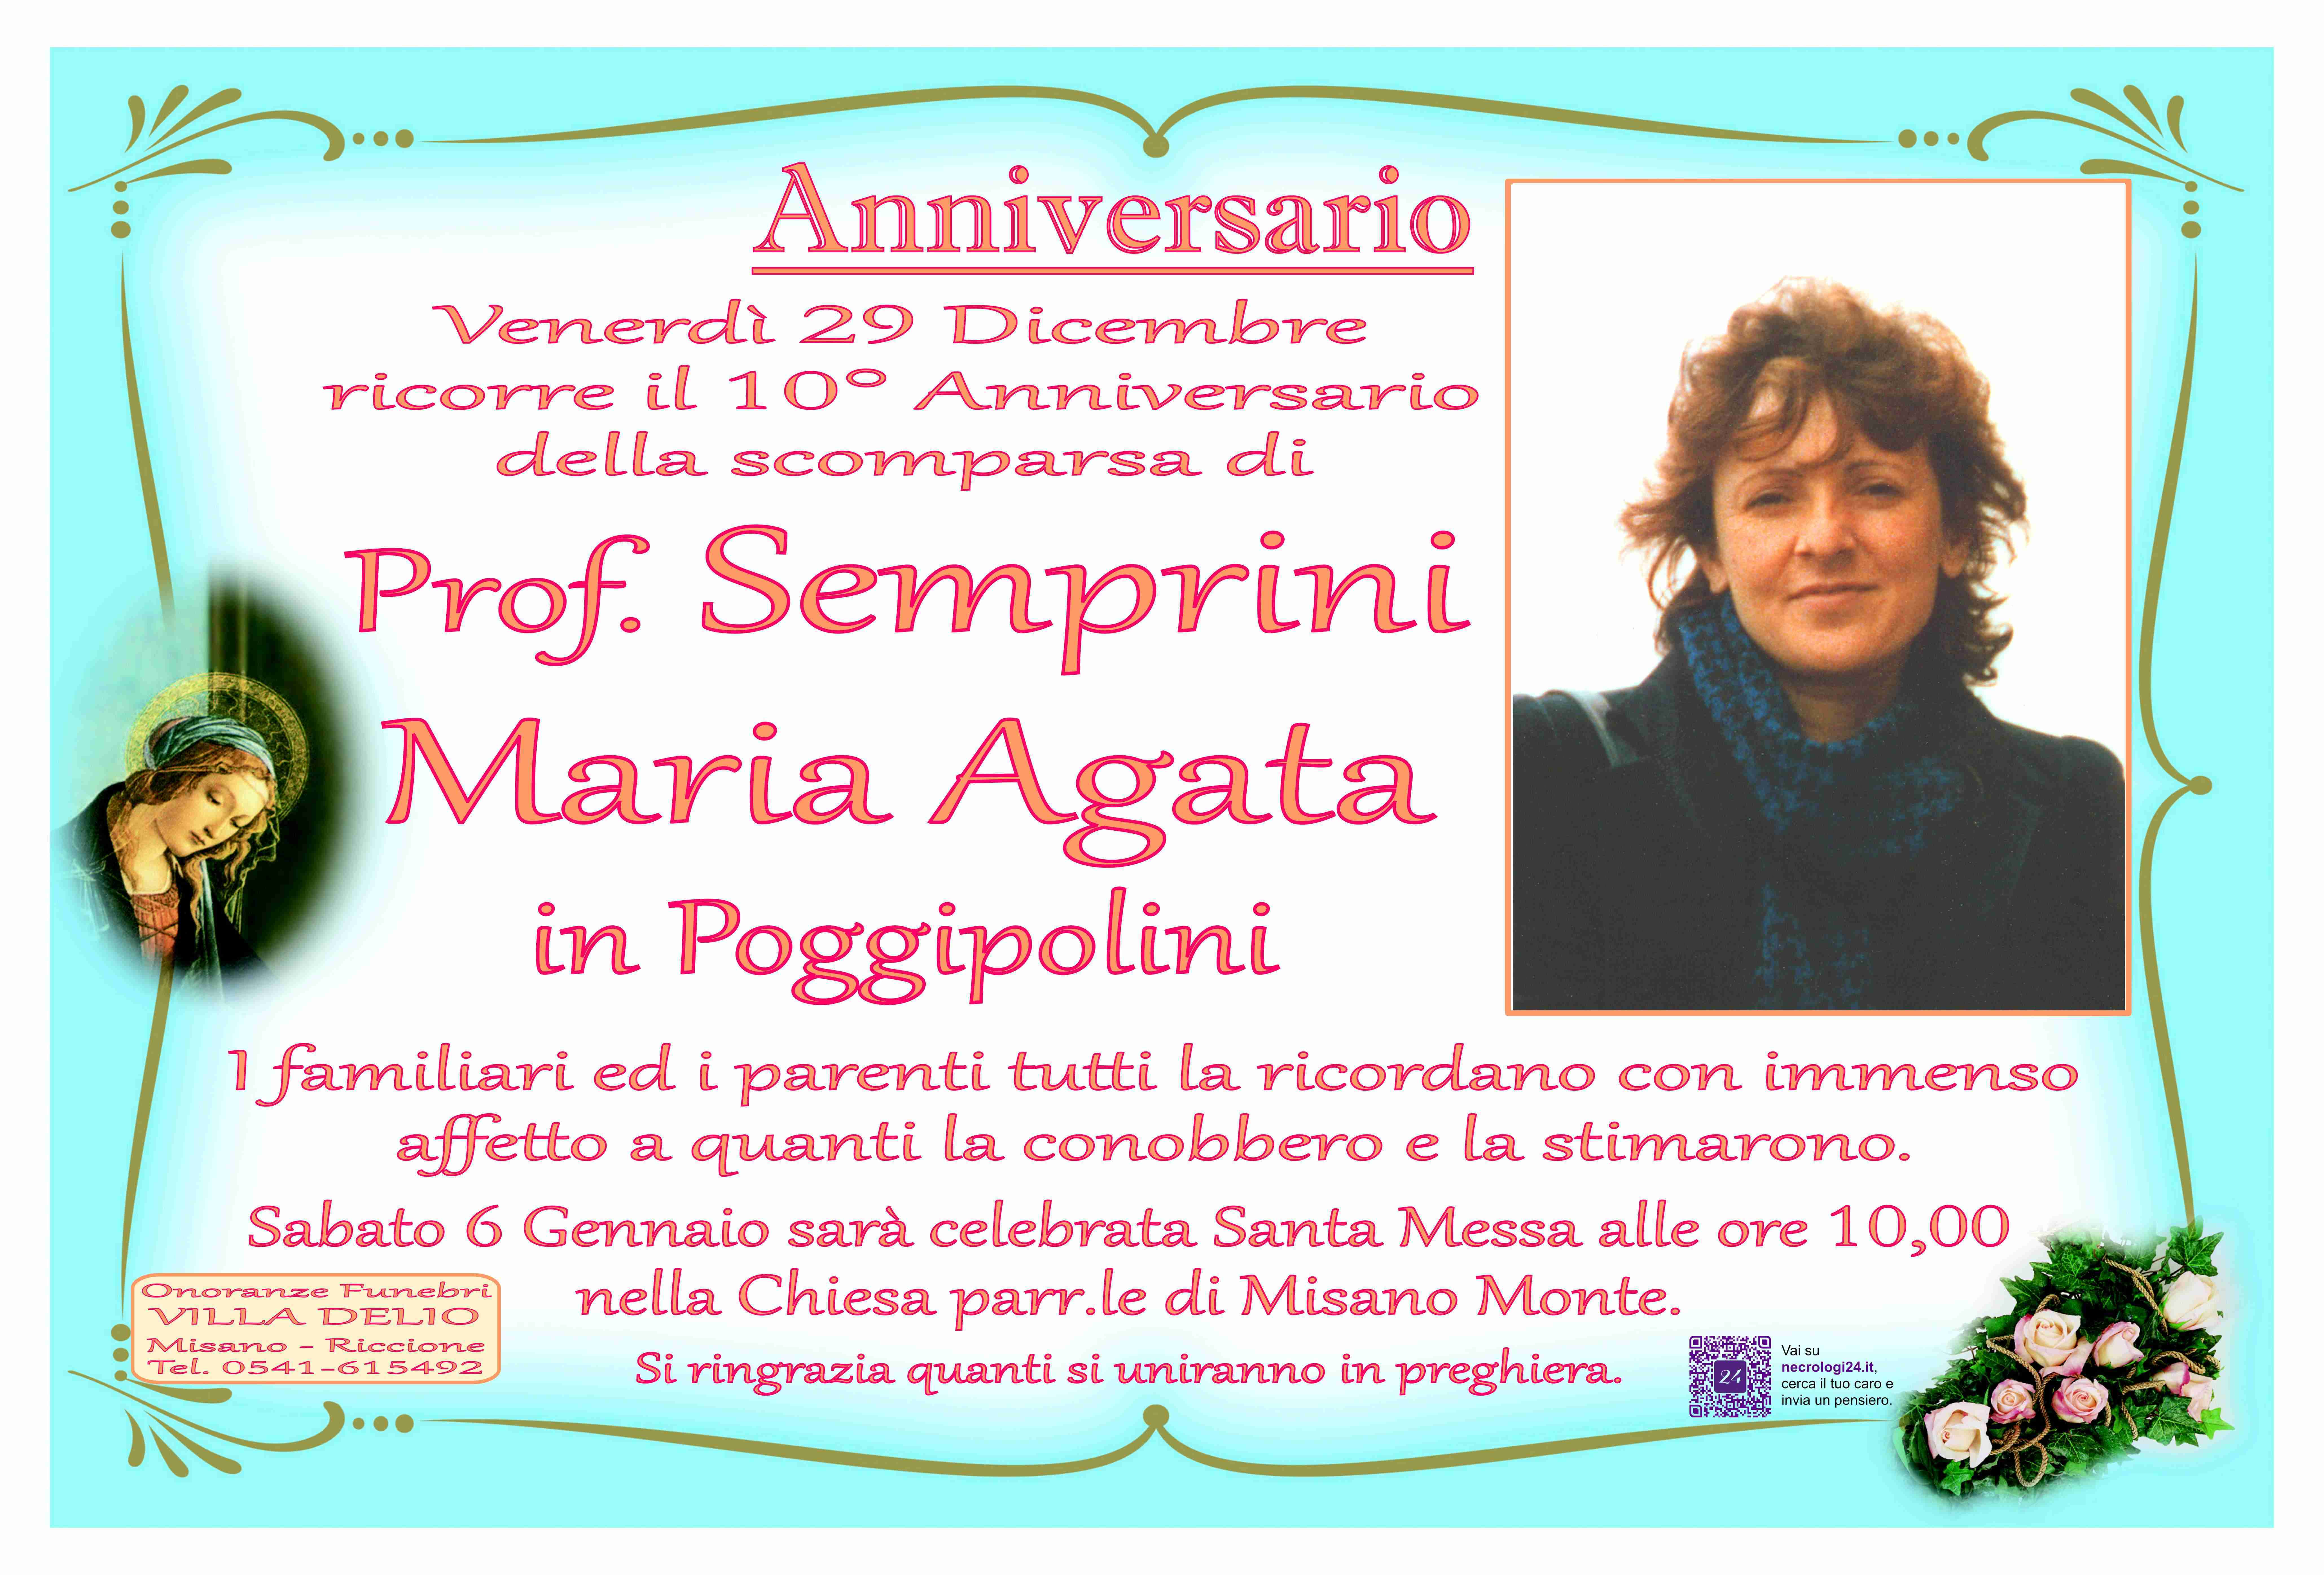 Prof. Semprini Maria Agata